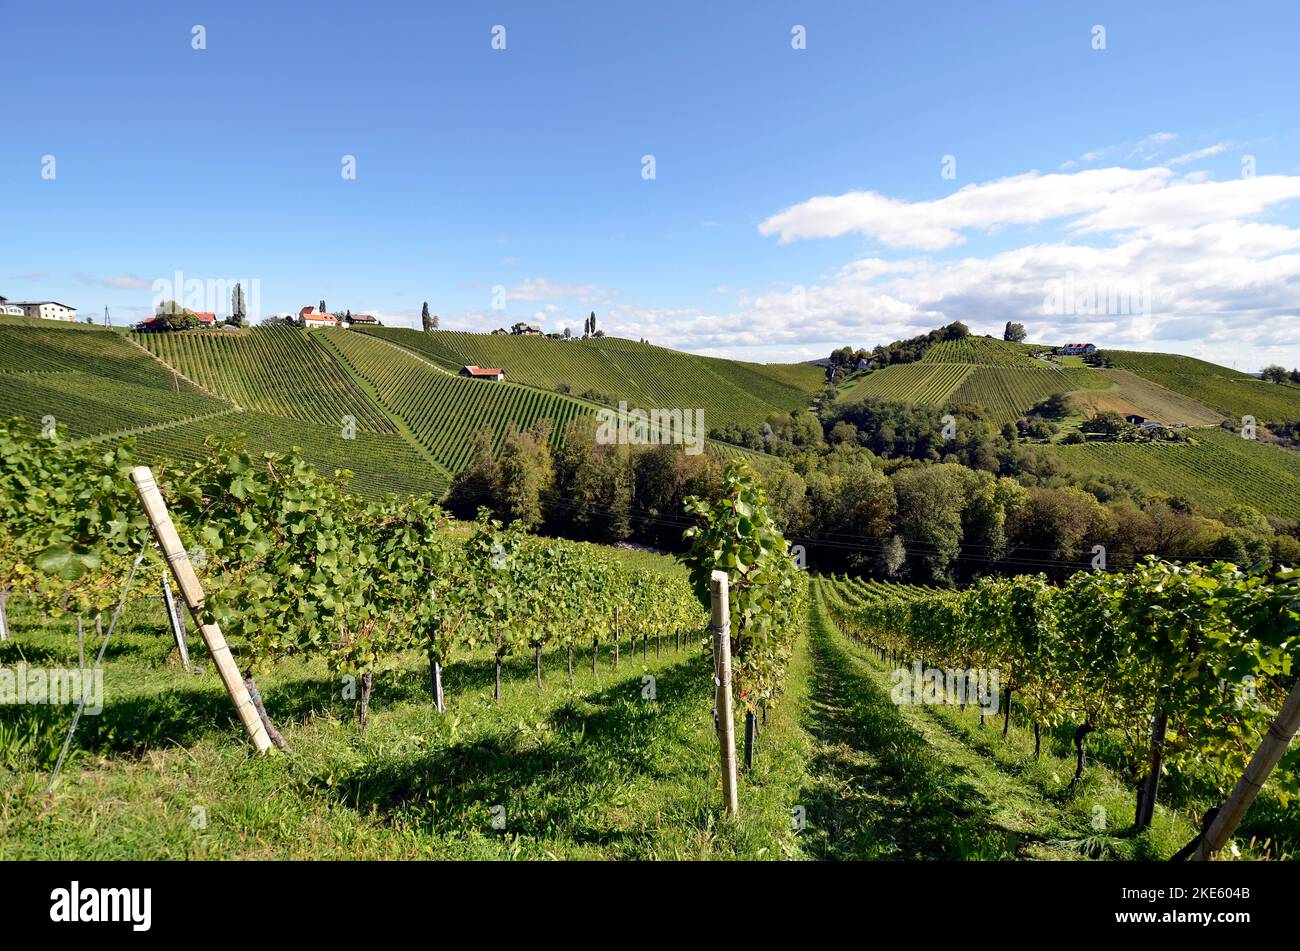 Austria, viñedos en las laderas escarpadas del valle de Sulm situado en la ruta vinícola de Estiria cerca de la frontera con Eslovenia, el paisaje montañoso también es k Foto de stock